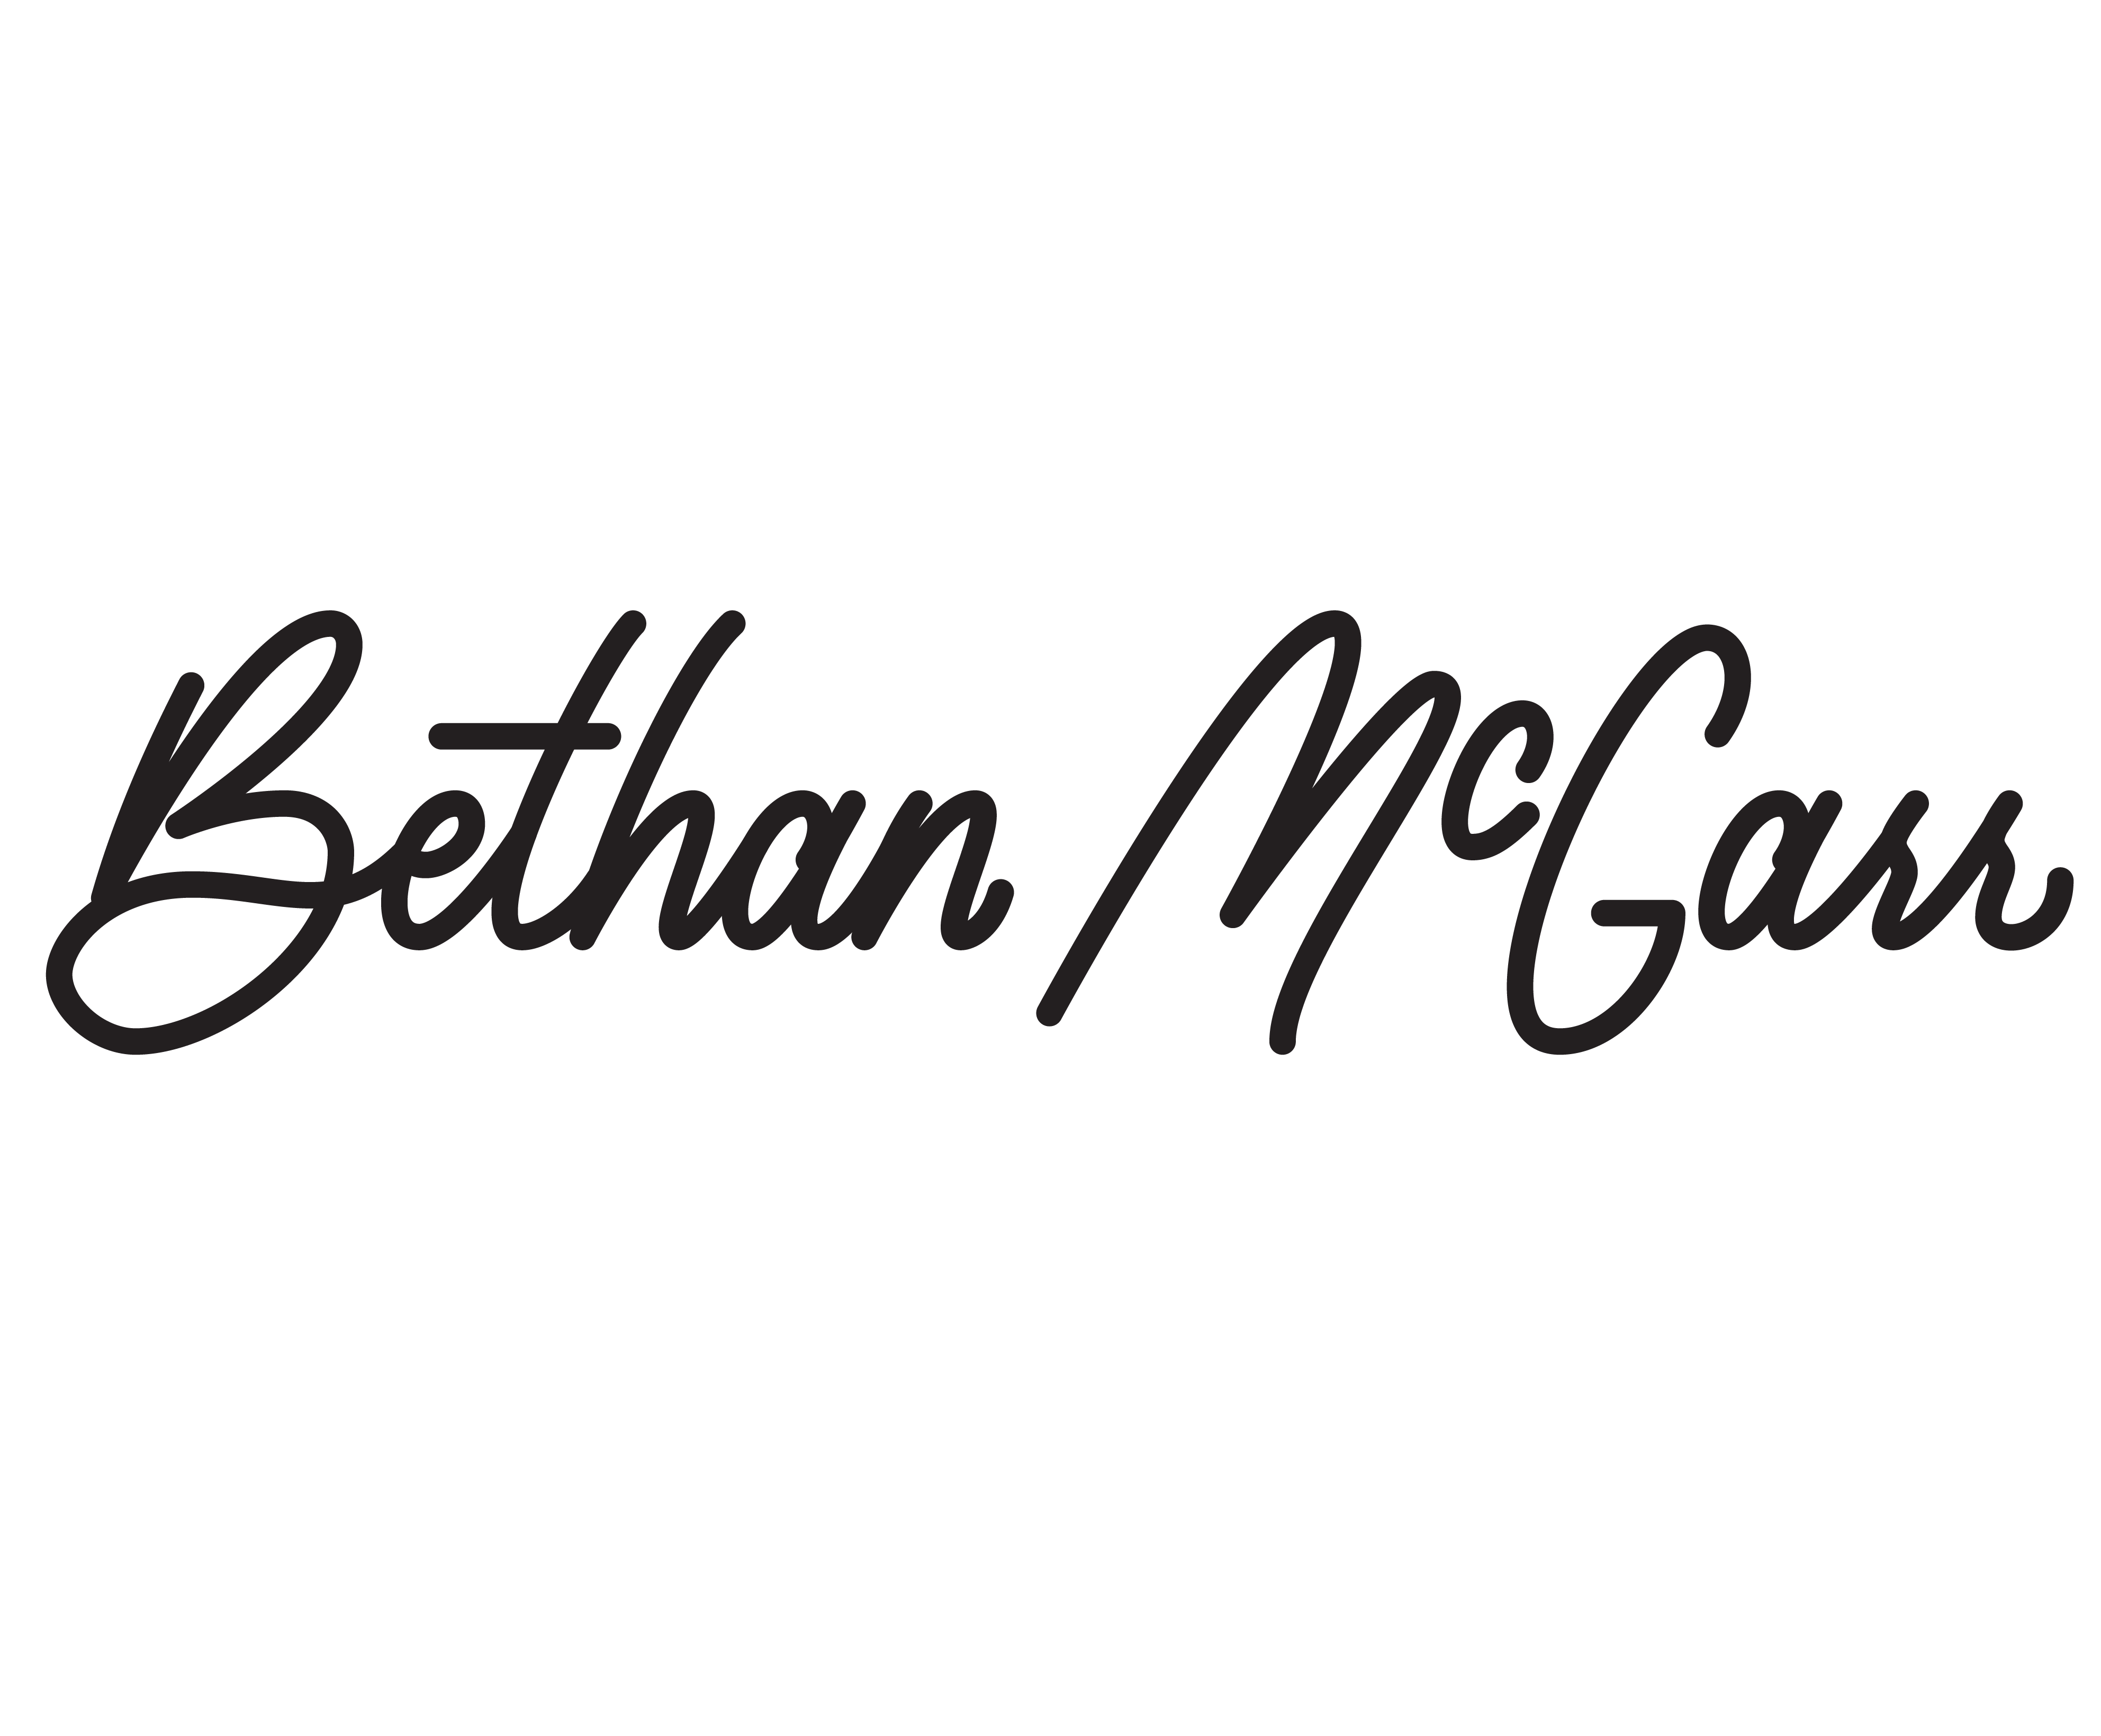 Bethan McGarr